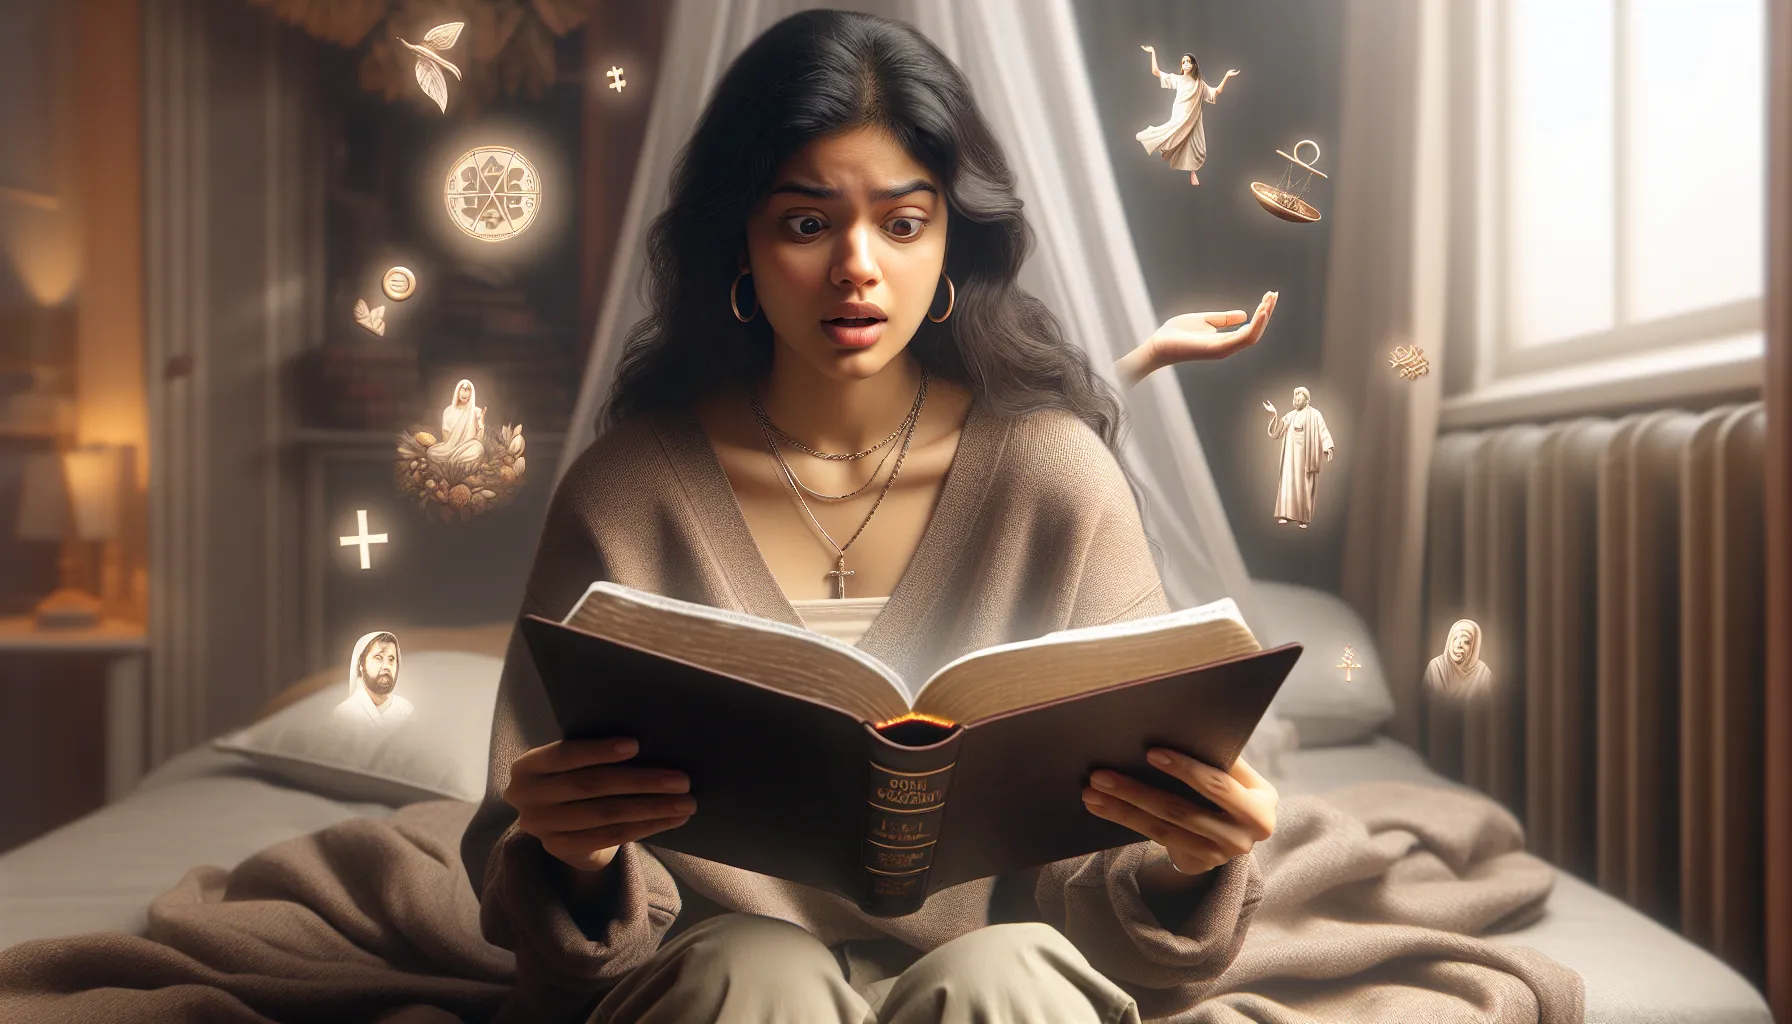 Ilustración de una persona leyendo la Biblia con una expresión de sorpresa y confusión